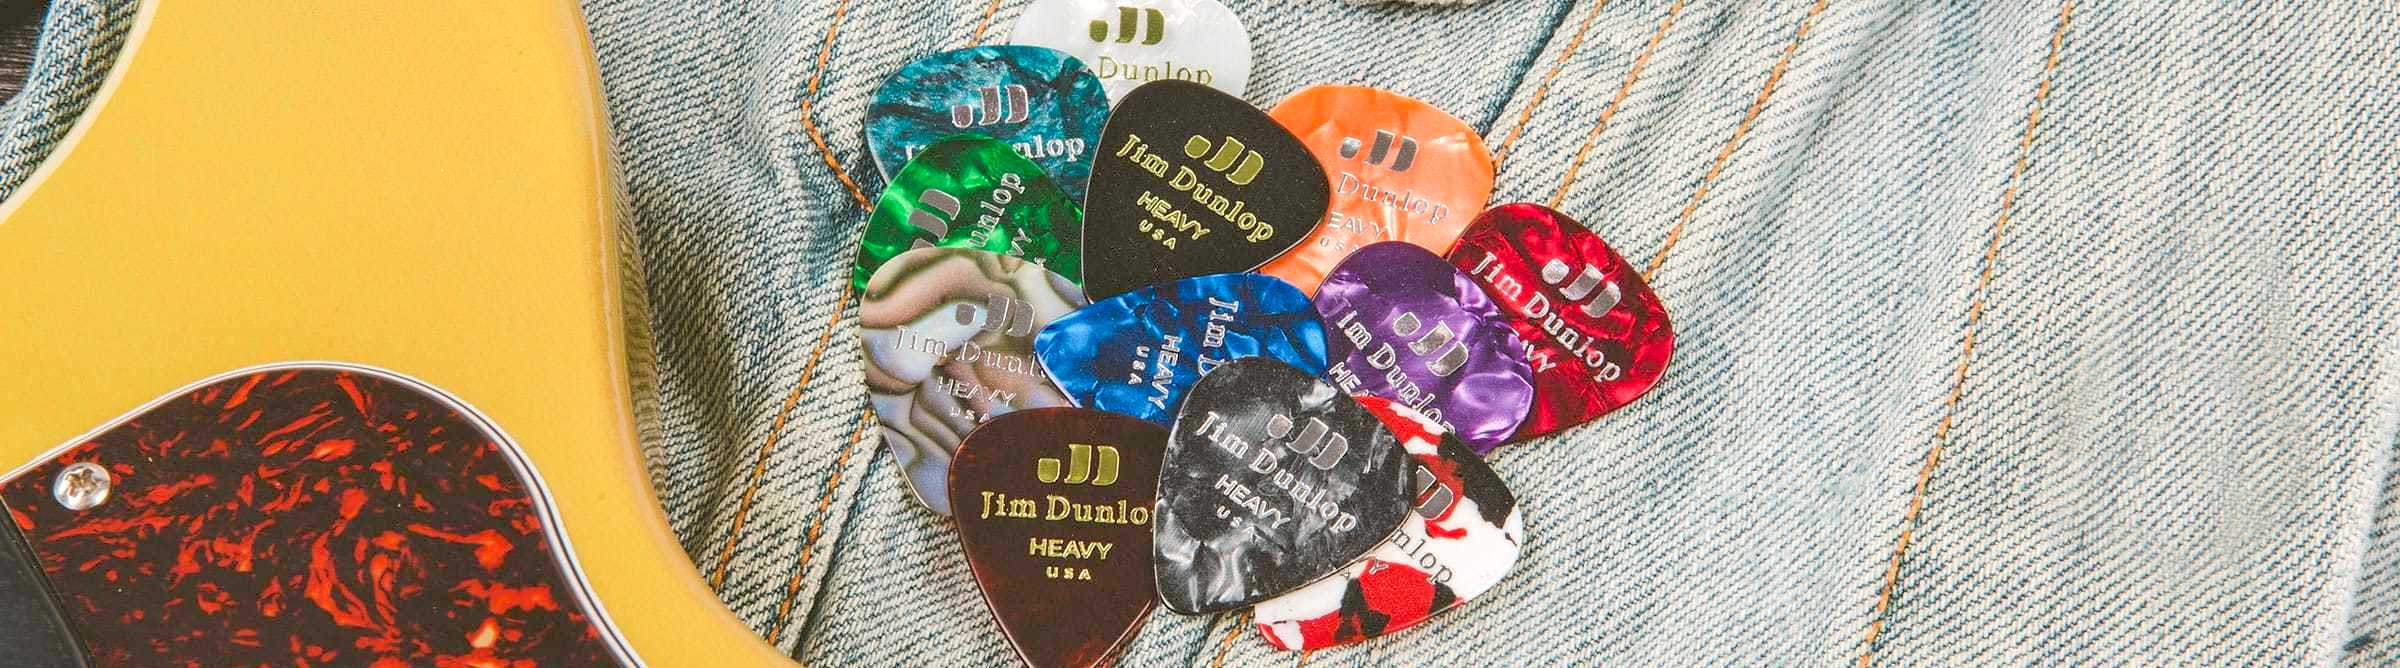 Jim Dunlop Celluloid Guitar Picks